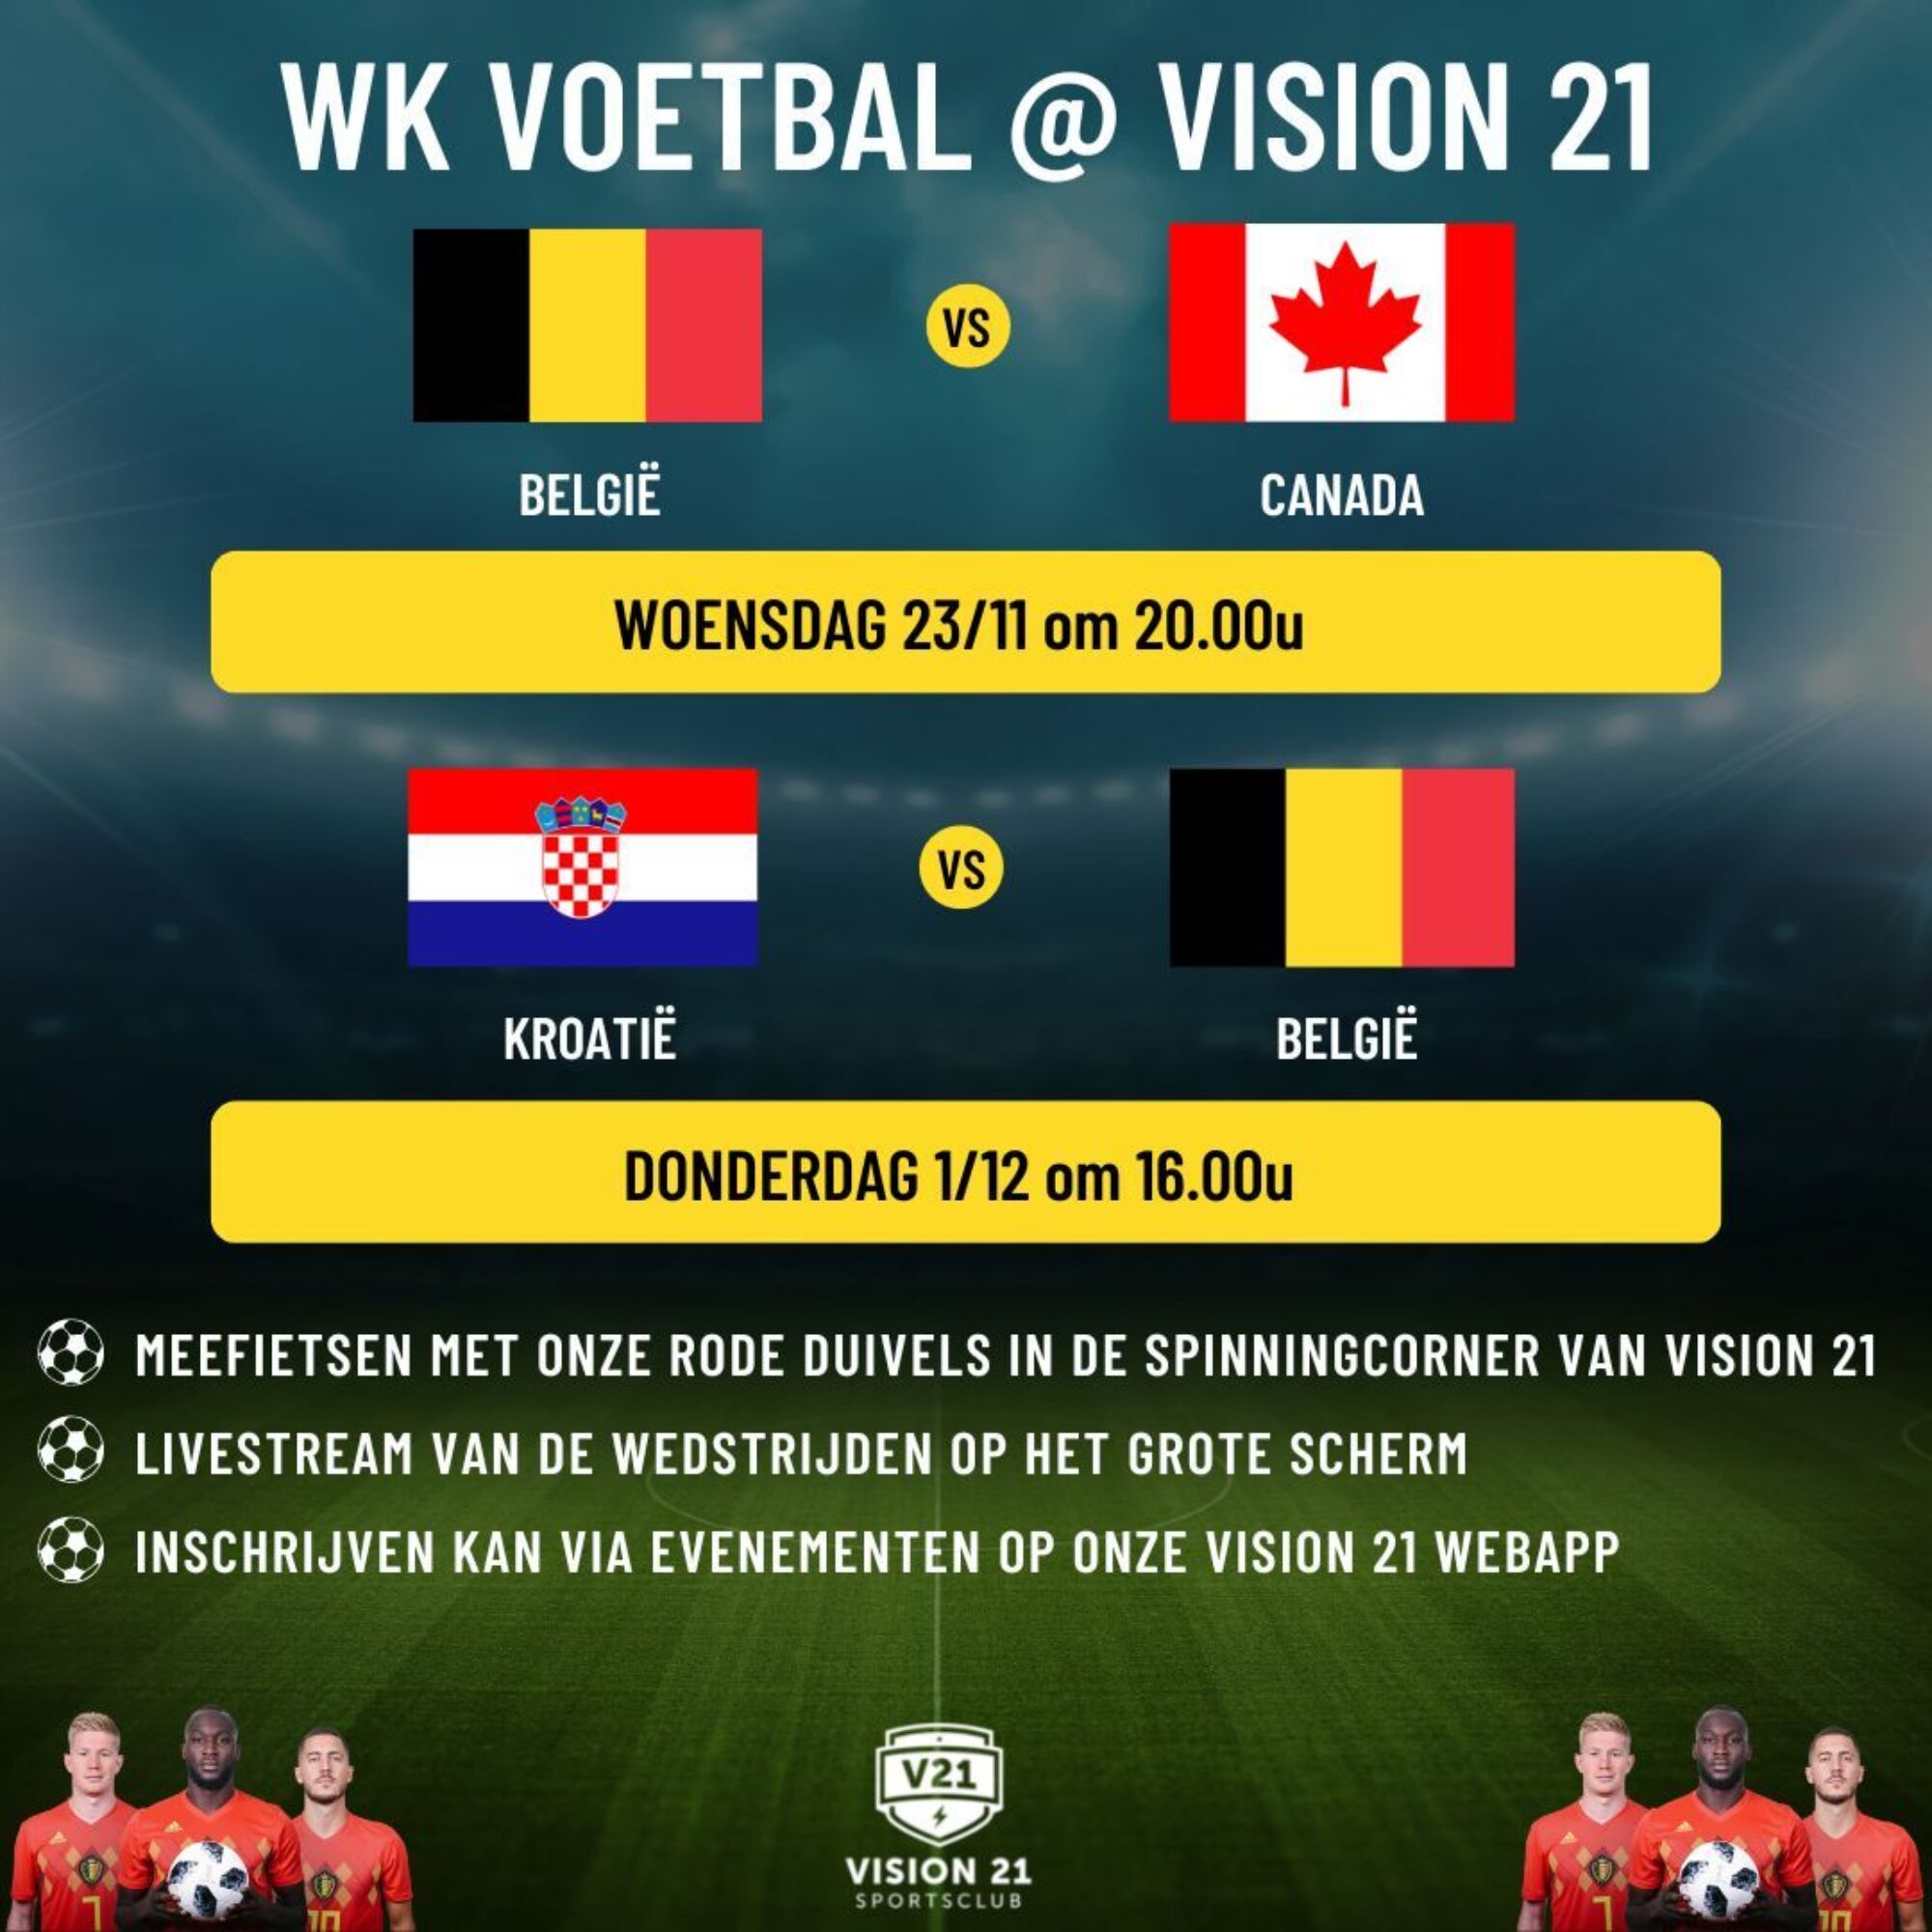 WK voetbal vision 21 laatste versie